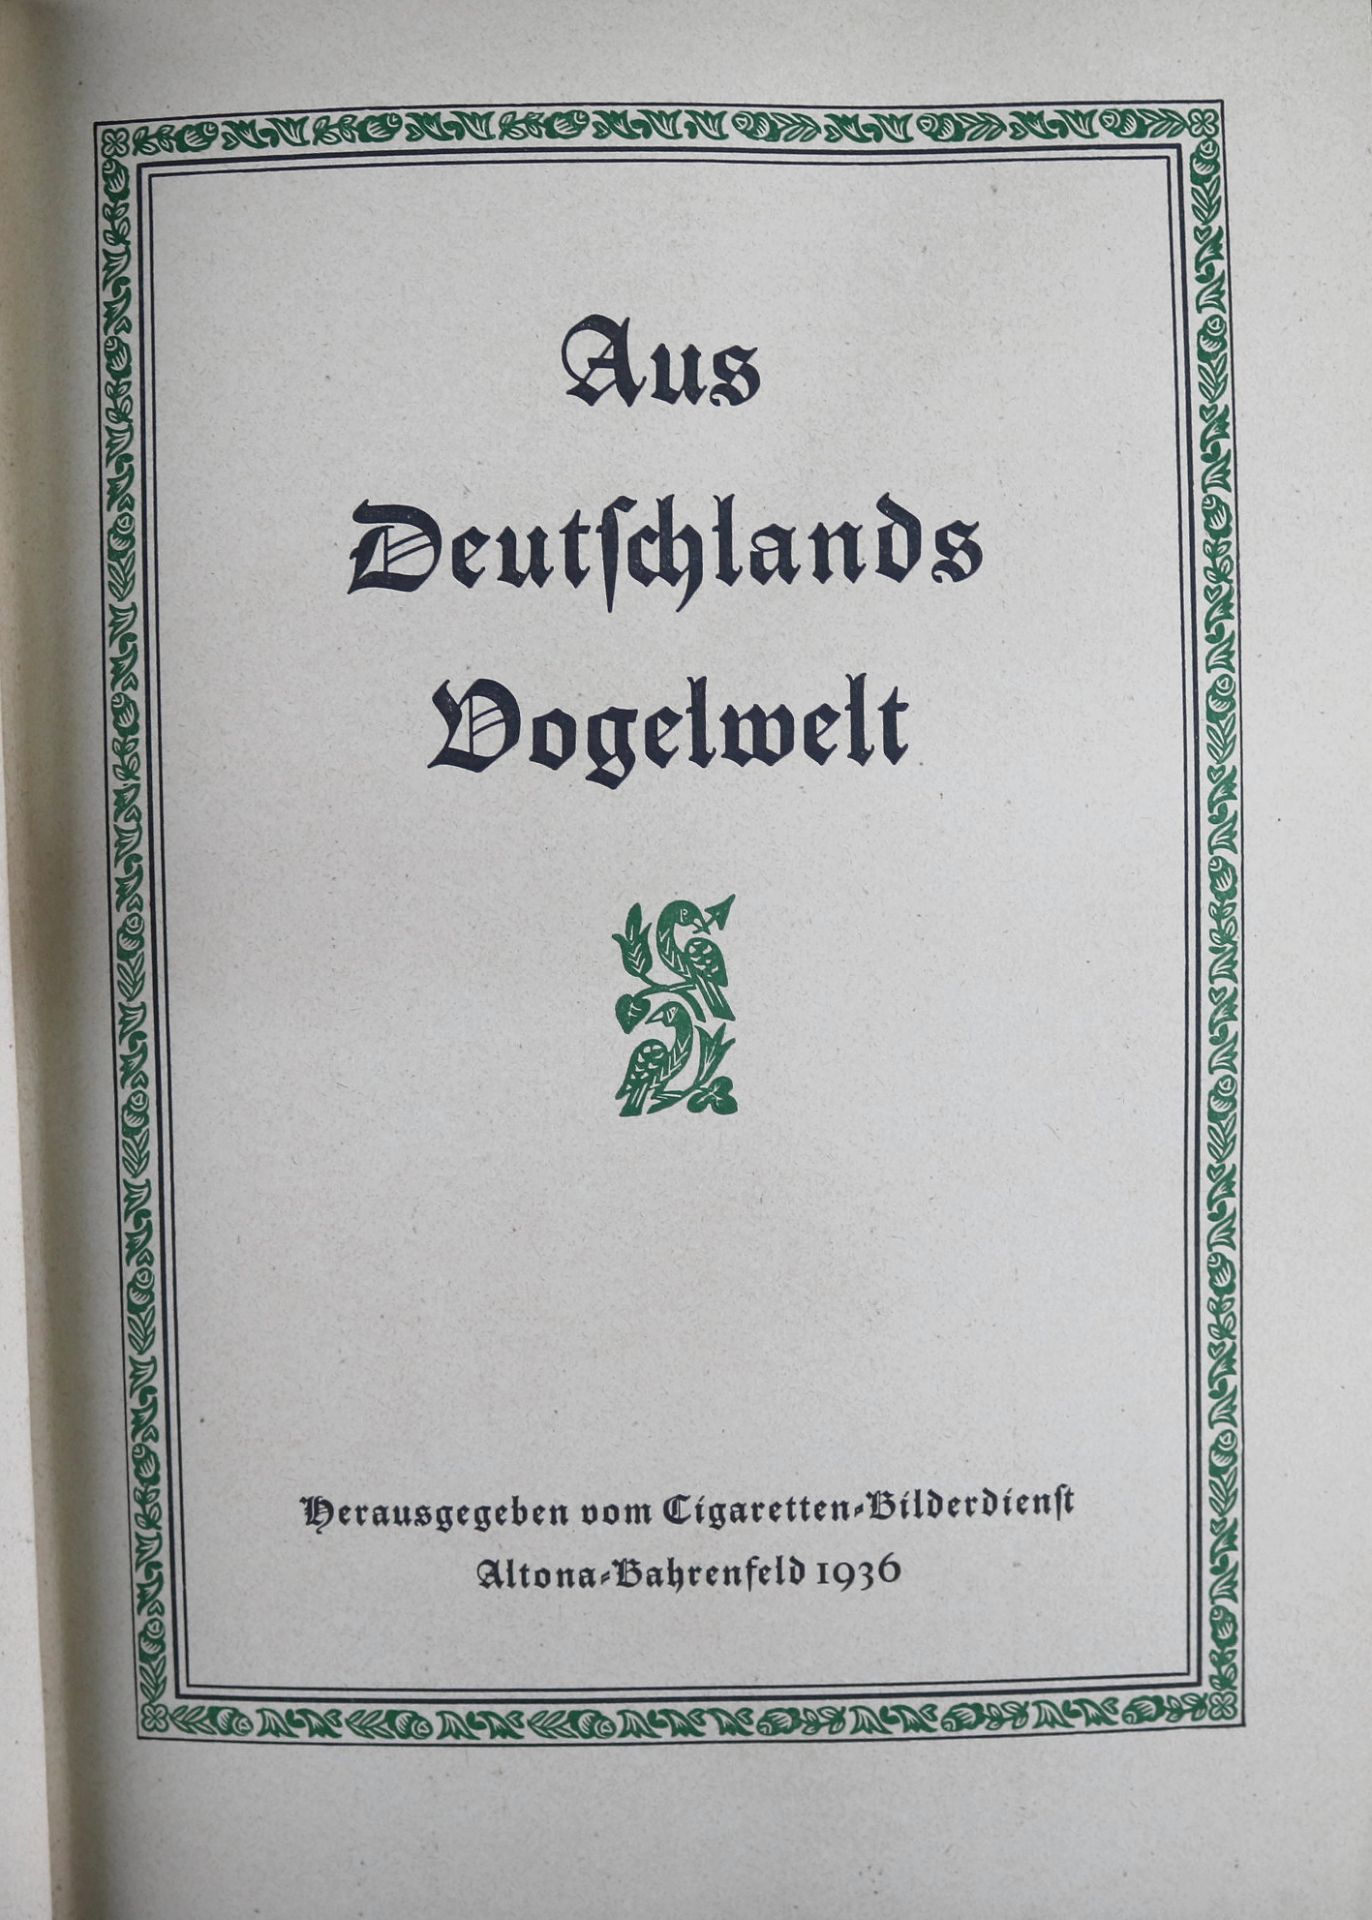 Sammelalbum "Aus Deutschlands Vogelwelt", Cigaretten-Bilderdienst, Altona Bahrenfeld 1936 - Image 2 of 4